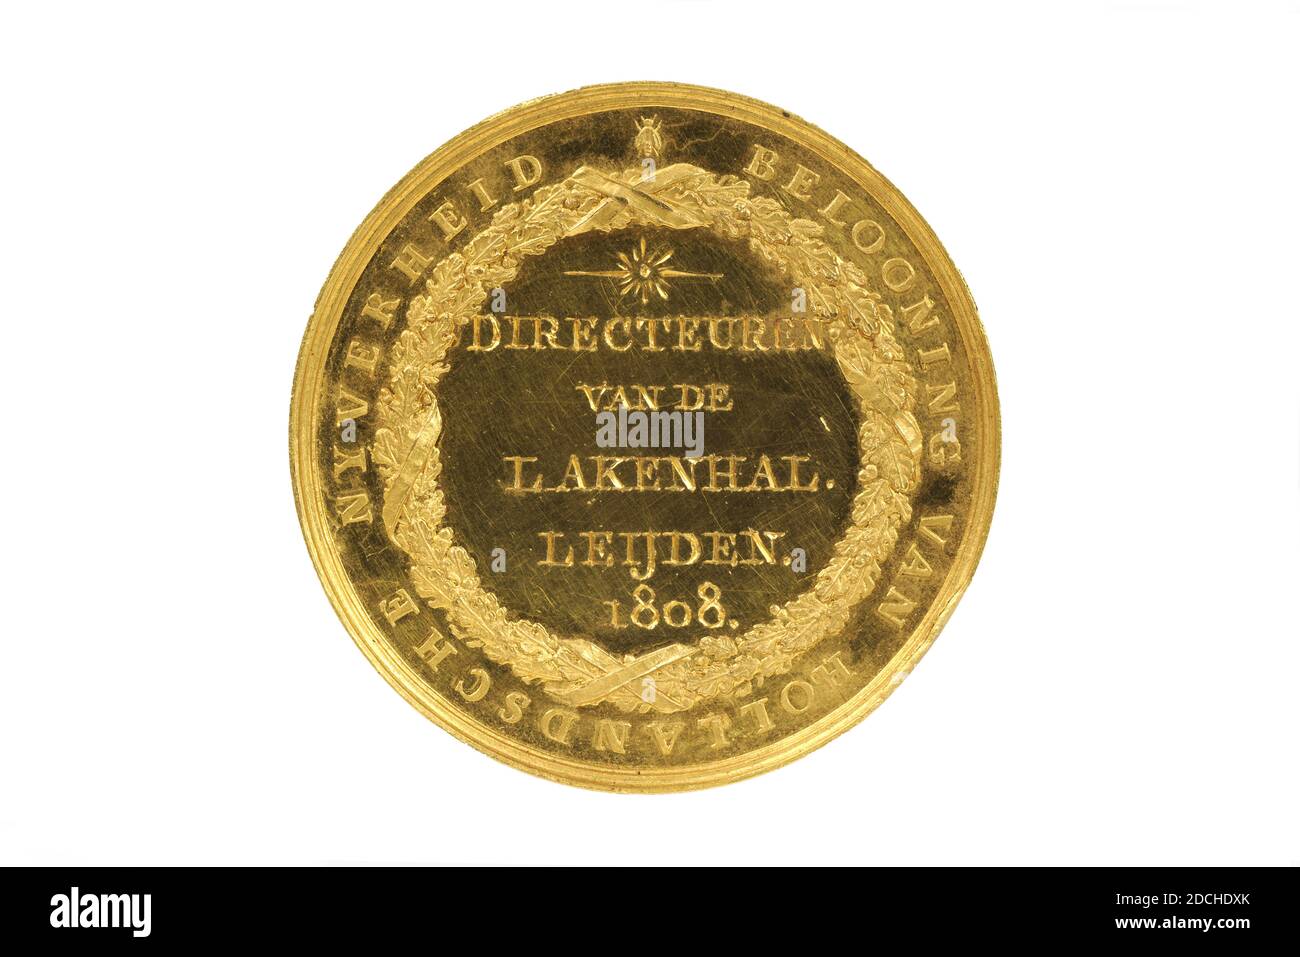 Médaille, H. de Heus, 1808, minted, général: 4 x 0.4cm (40 x 4mm), poids: 63.8g, Prix d'or de l'industrie, décerné aux directeurs du Cloth Hall en 1808. Sur l'inverse se trouve l'arme du roi Louis Napoléon. Le lettrage de bord est LODEWIJK NAPOLÉON ROI DE HOLLANDE PROTECTEUR DU PEUPLE. À l'arrière se trouve une couronne avec le lettrage de la récompense DE l'INDUSTRIE HOLLANDSCHE et gravée dans les DIRECTEURS de couronne DU LAKENHAL LEYDEN 1808. Sur le bord est H. de Heus fecit, Amsterdam, armoiries (panneau Banque D'Images